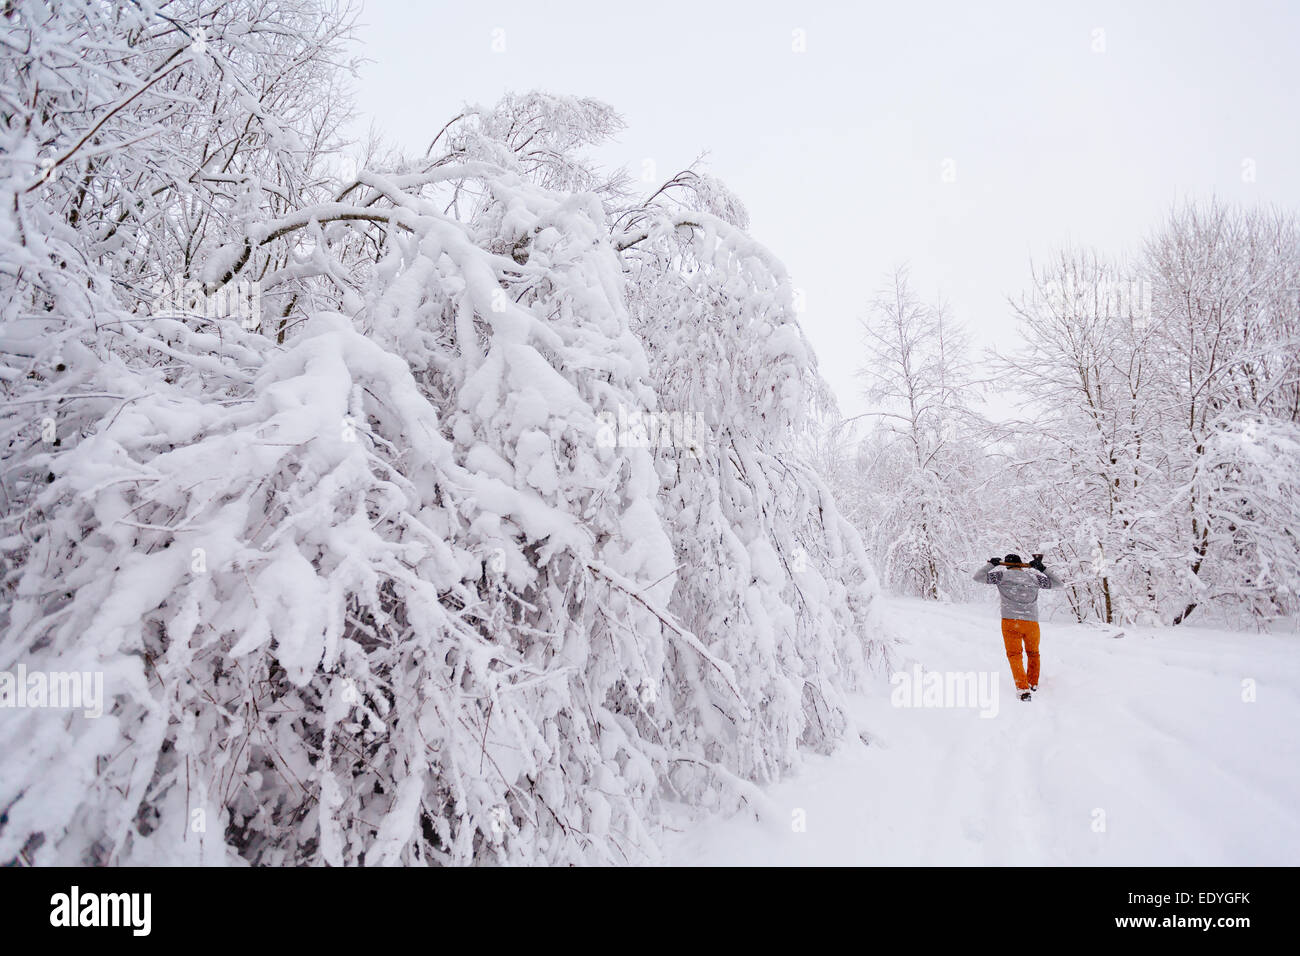 Lumberjack walks in a snowy forest Stock Photo